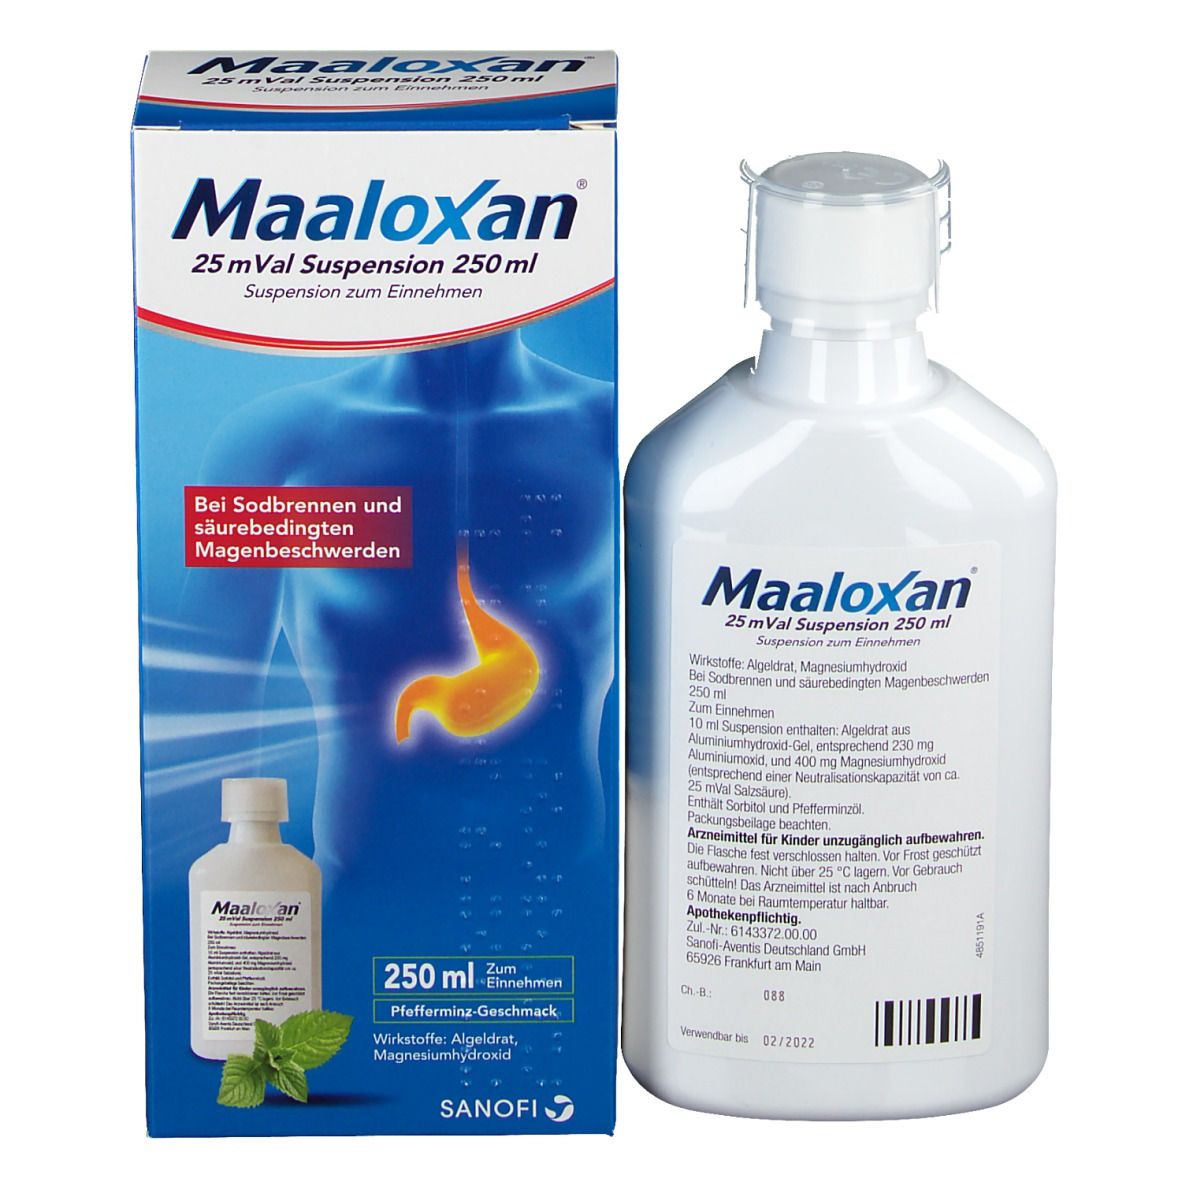 Maaloxan®  Suspension bei Sodbrennen mit Magenschmerzen